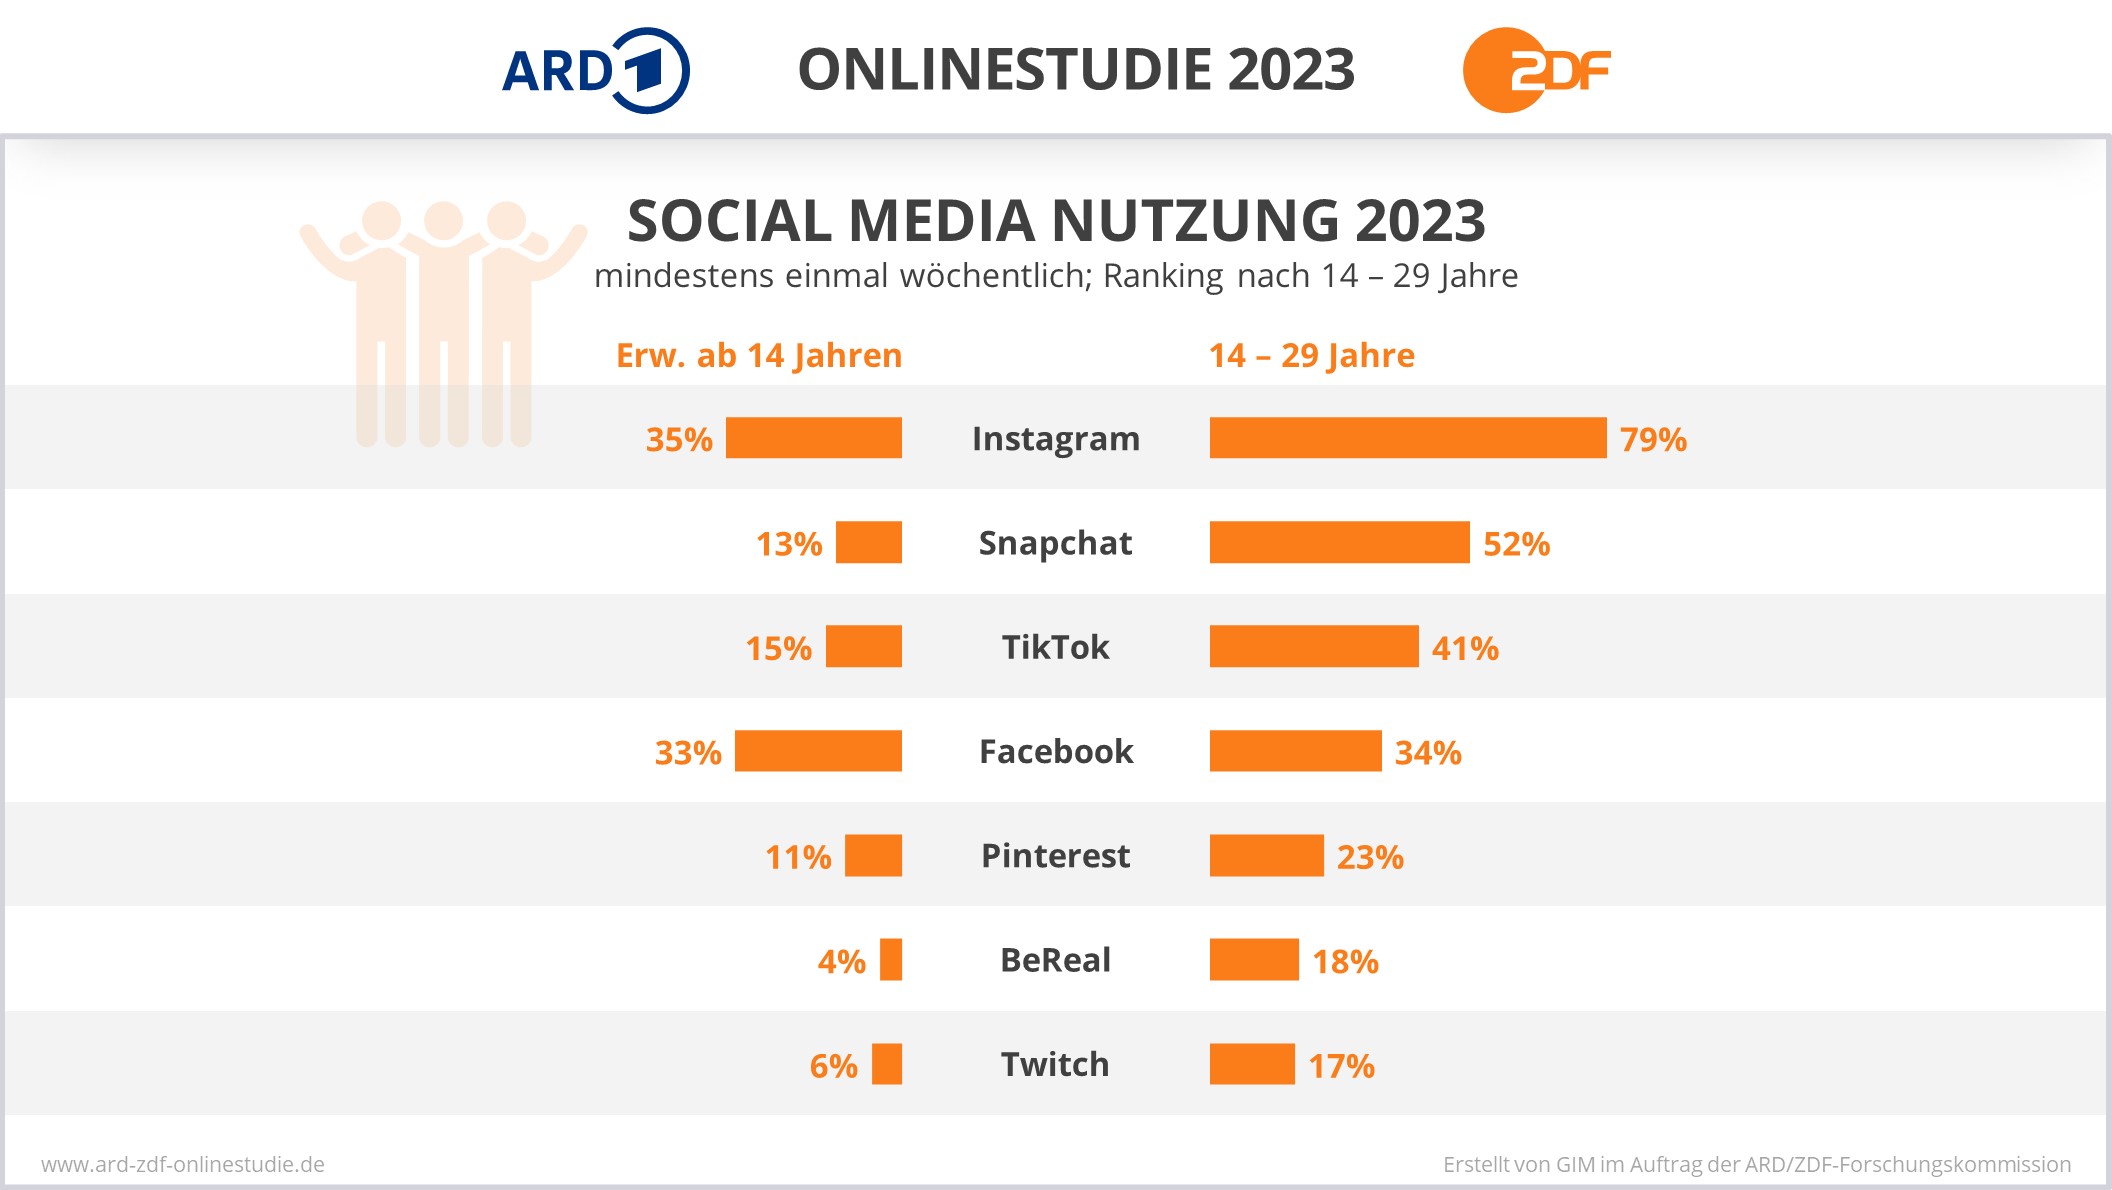 Bild aus der ARD/ZDF-Onlinestudie 2023 zeigt die am häufigsten genutzten Social Media Plattformen in Deutschland. Instagram ist auf dem ersten Platz. In der befragten Altersgruppe ab 14 Jahre nutzen 35 Prozent mindestens einmal wöchentlich Instagram.